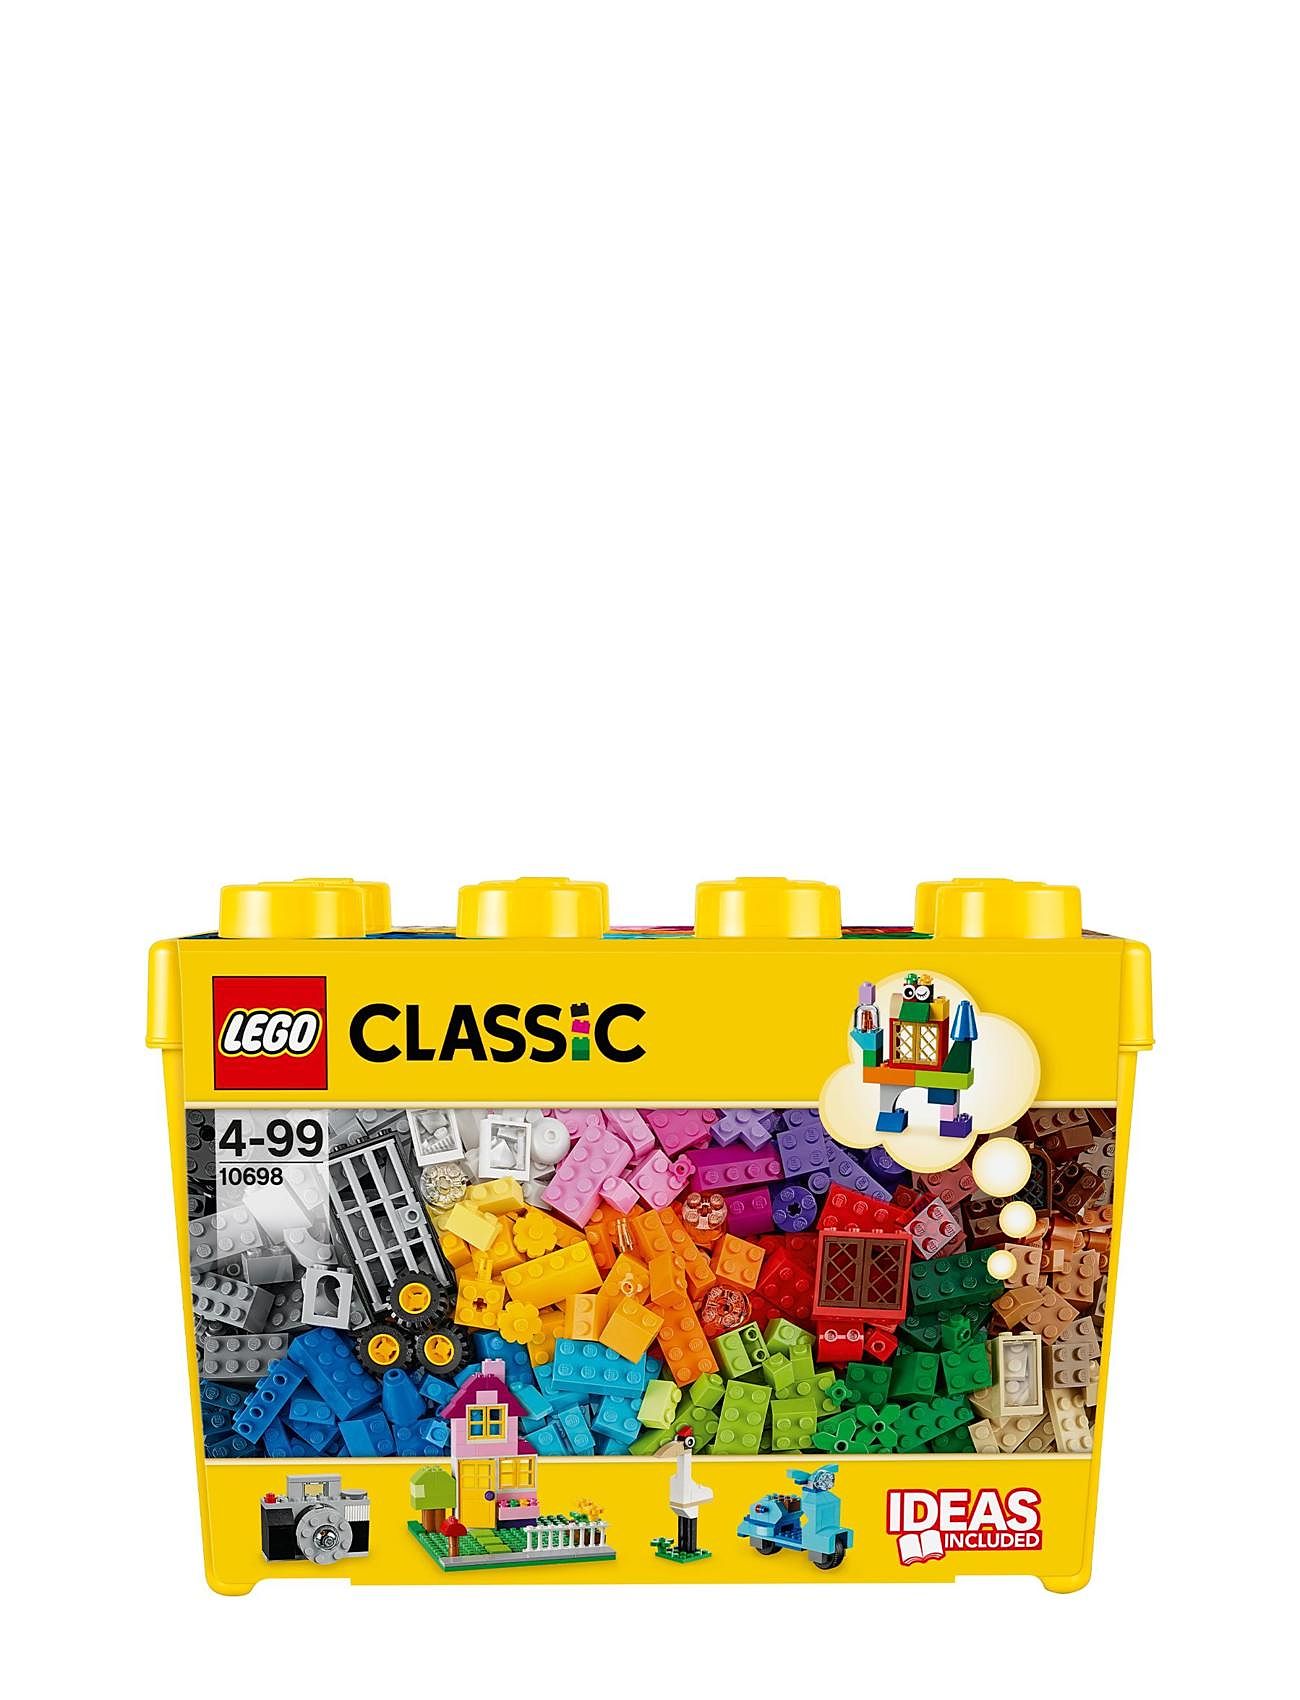 Large Creative Brick Storage Box Set Toys Lego Toys Lego classic Multi/patterned LEGO